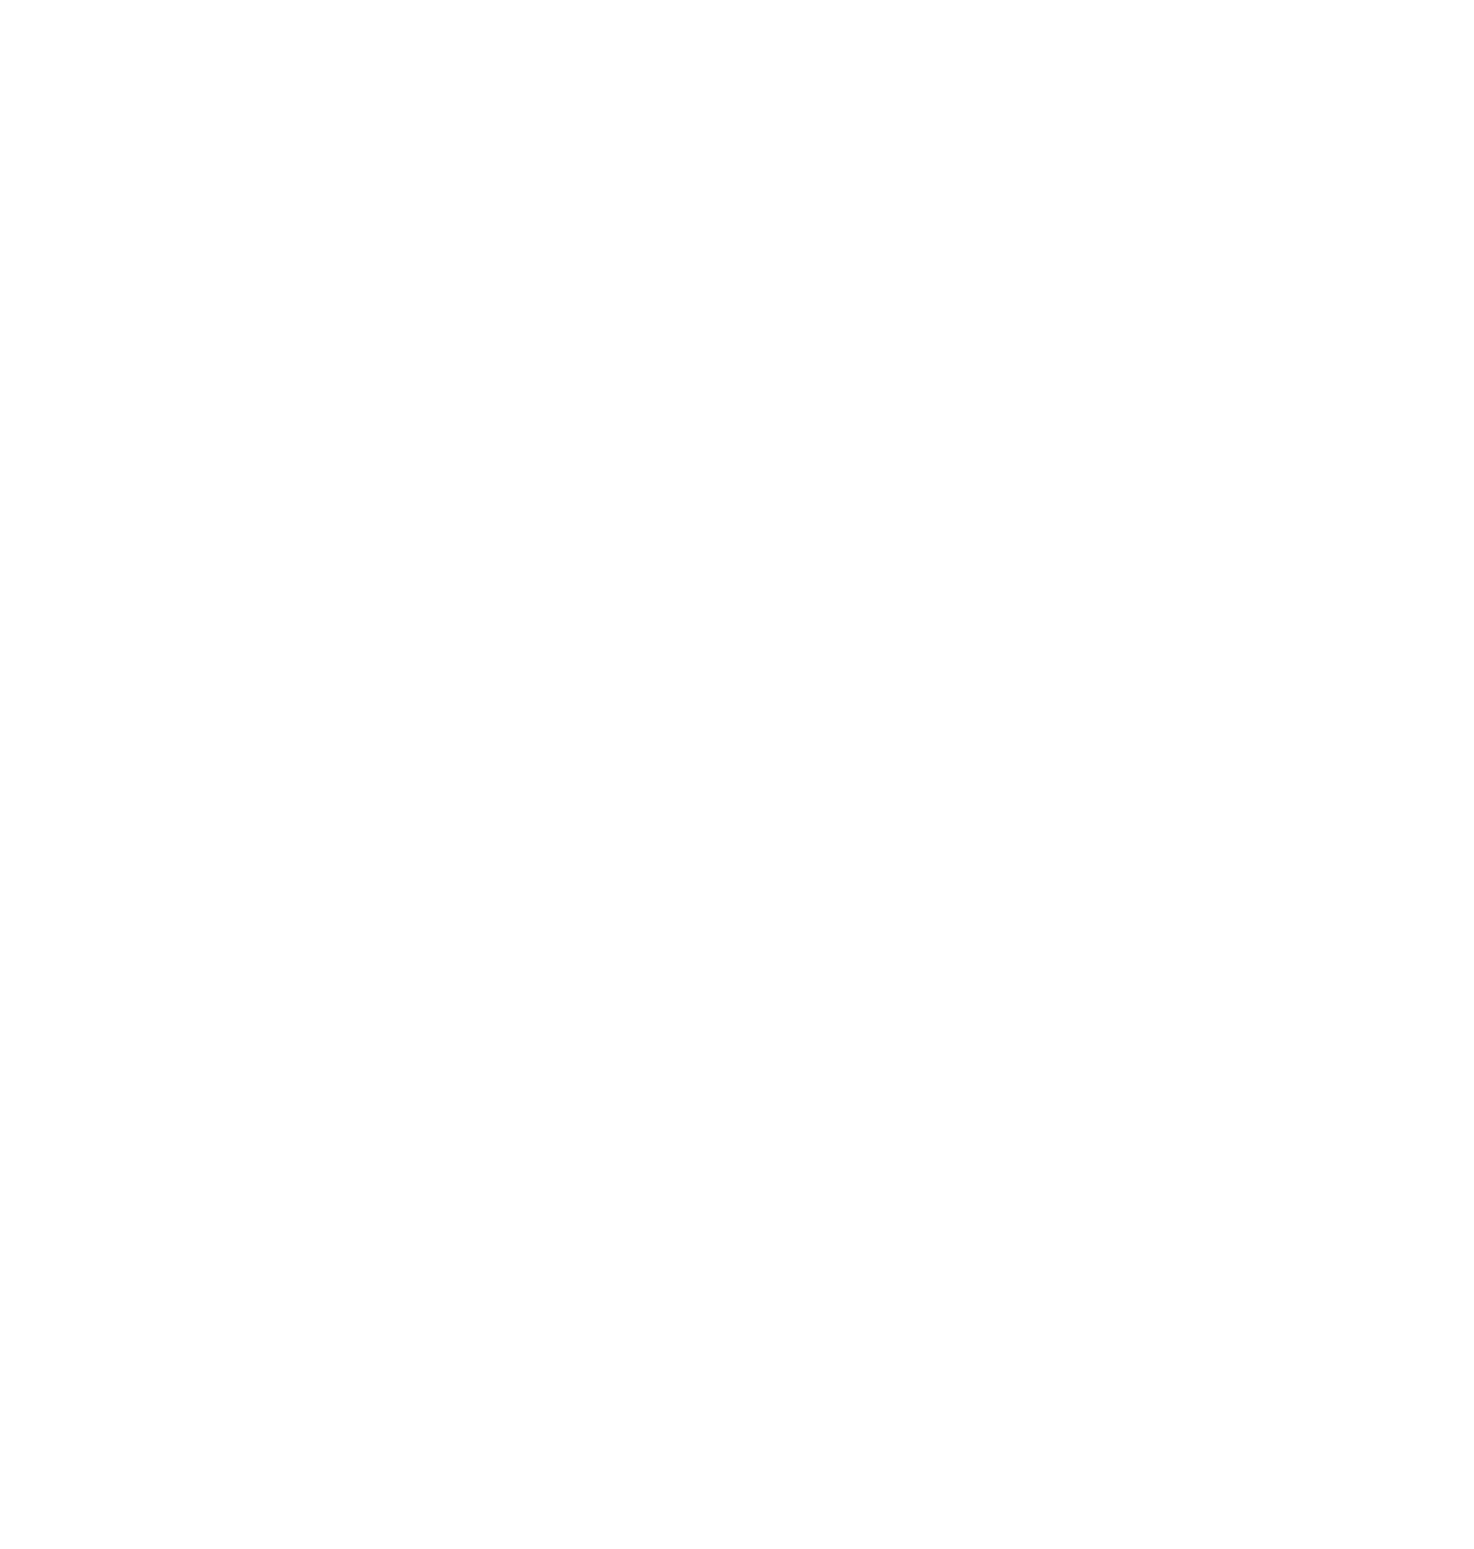 ImmunityBio logo pour fonds sombres (PNG transparent)